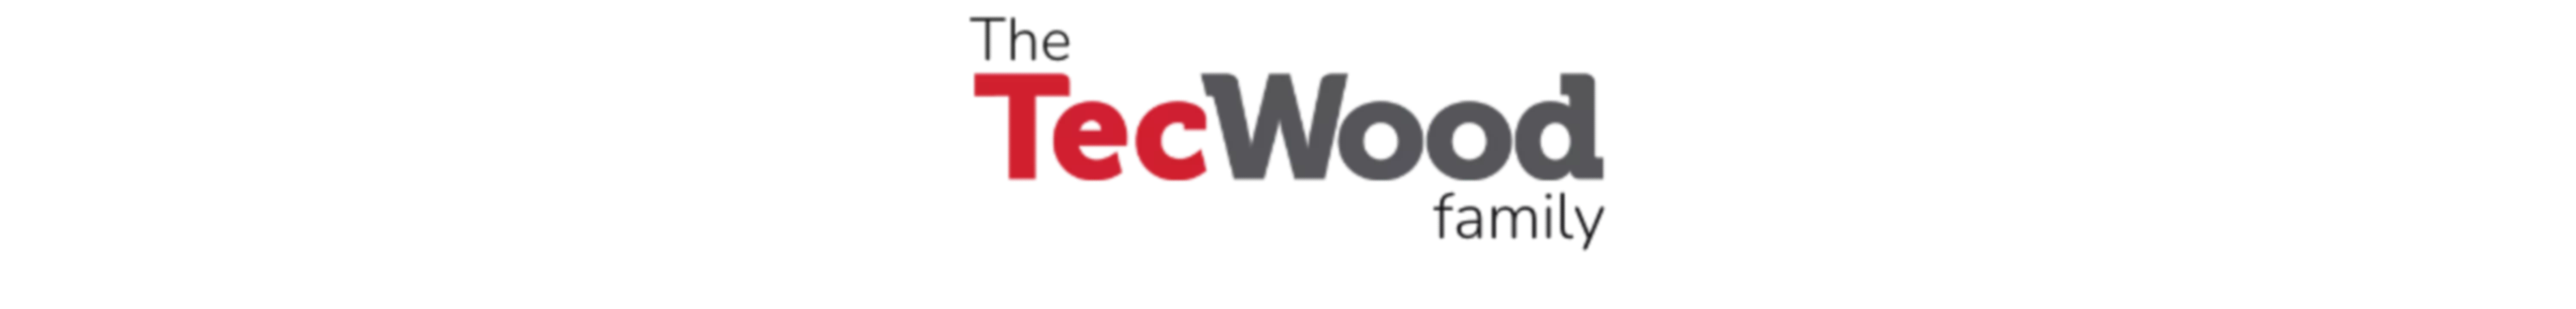 tecwood family logo